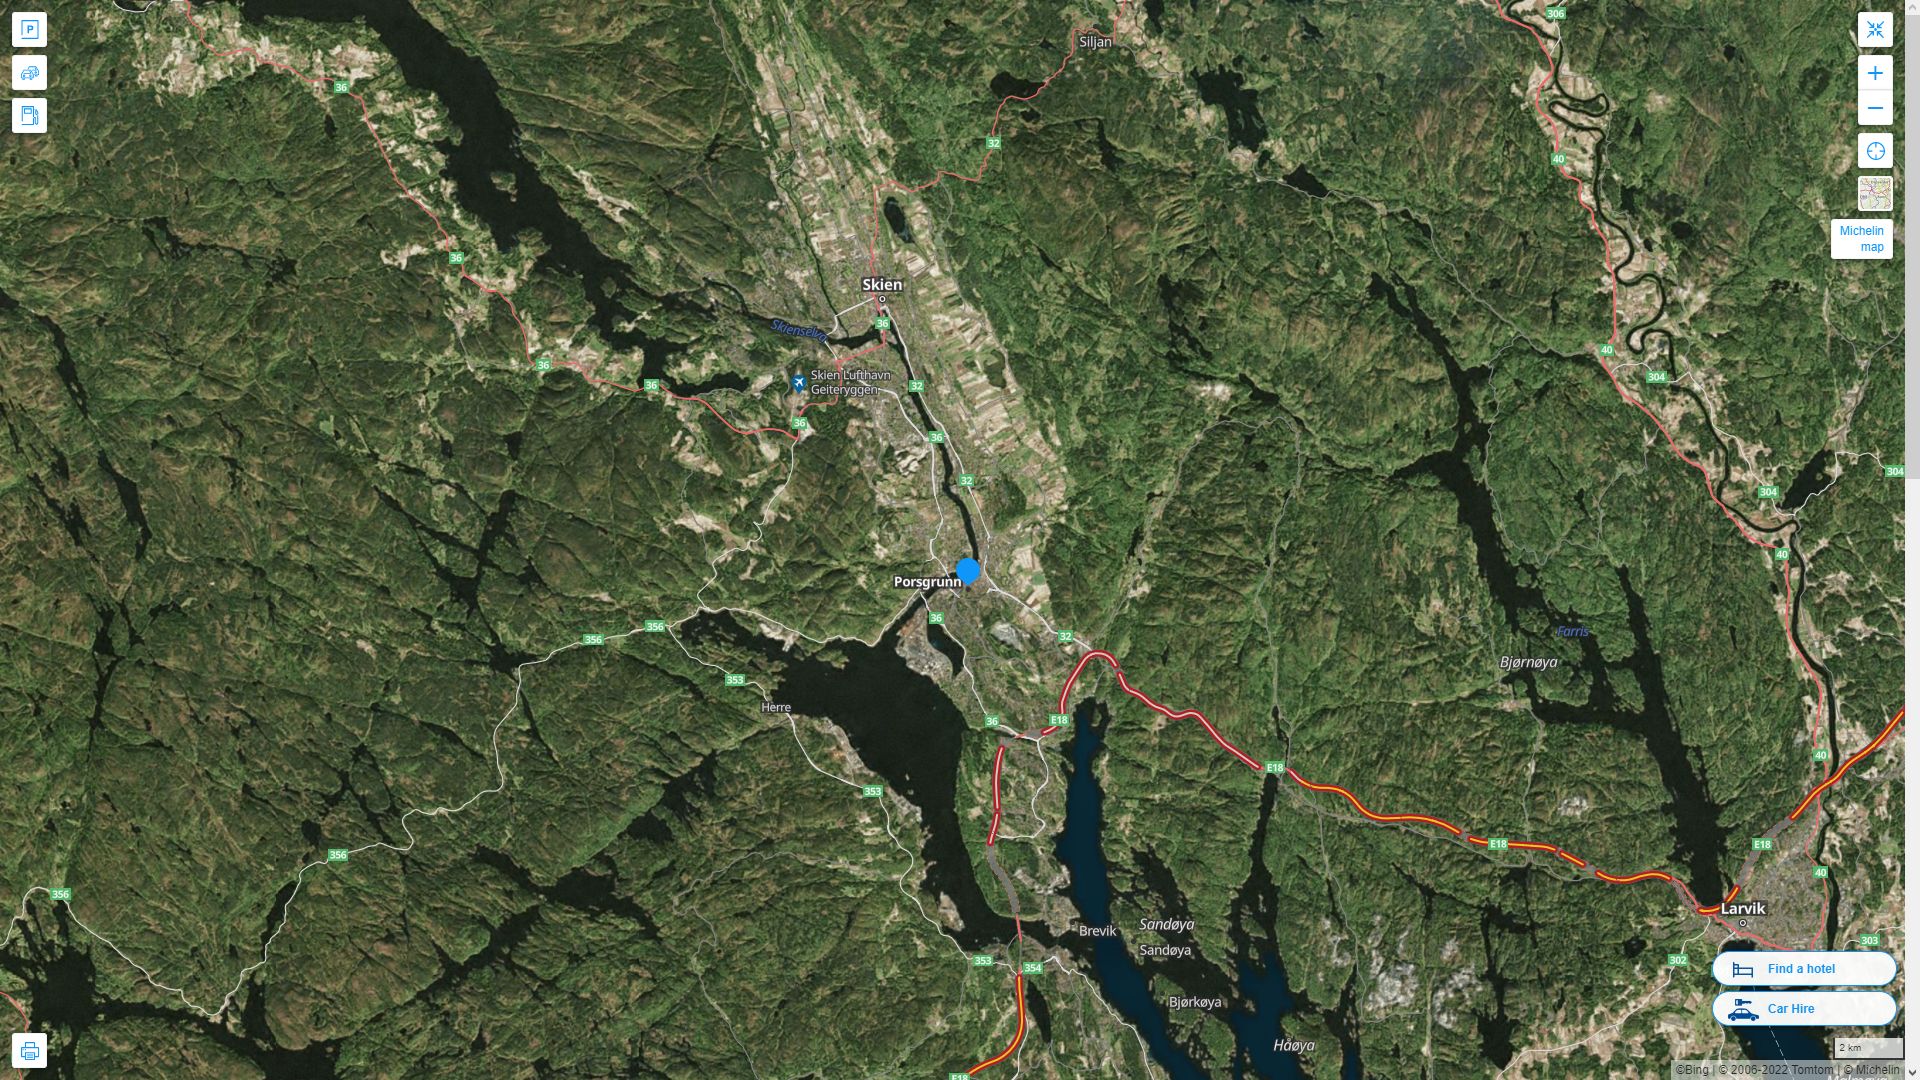 Porsgrunn Norvege Autoroute et carte routiere avec vue satellite